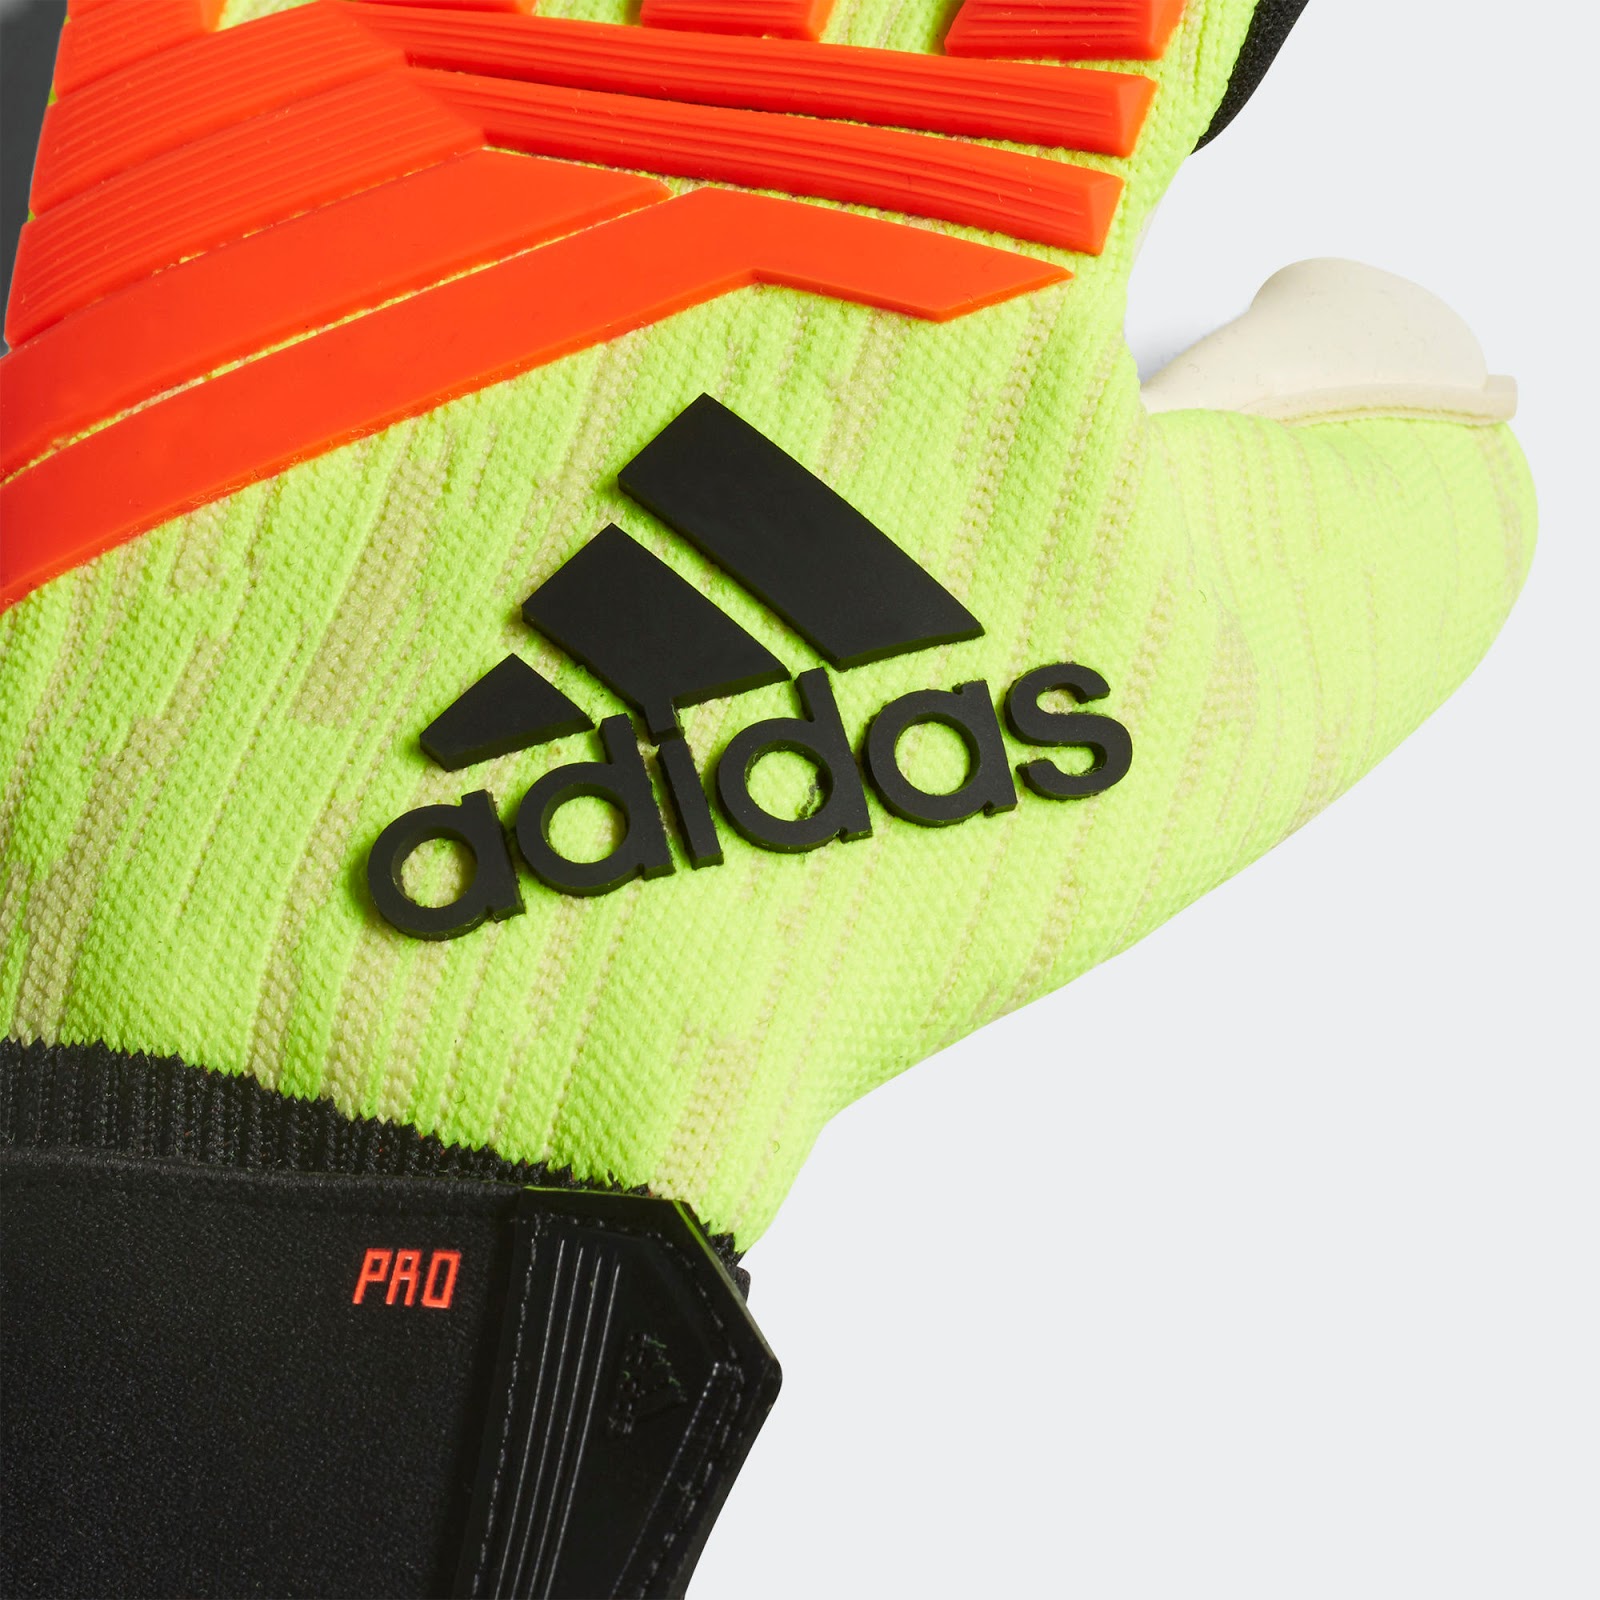 Adidas Predator 2018 Cup Goalkeeper Gloves Released - Footy Headlines